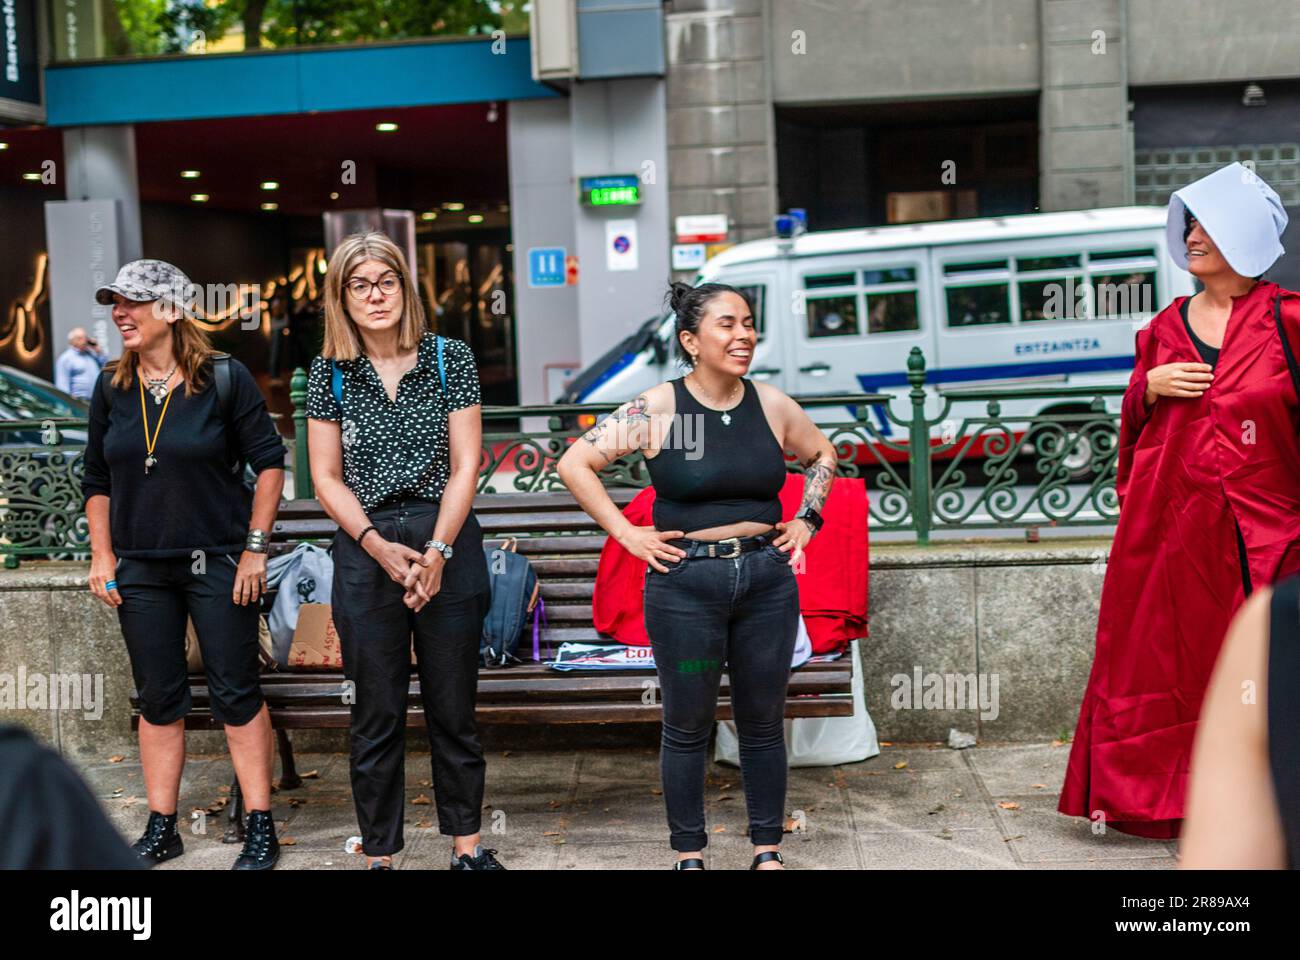 Radikale feministische Aktivisten, die in einem Kostüm aus der Serie "das Magazin" gekleidet sind, nehmen an einer Demonstration gegen die Leihmutterschaft Teil. Stockfoto